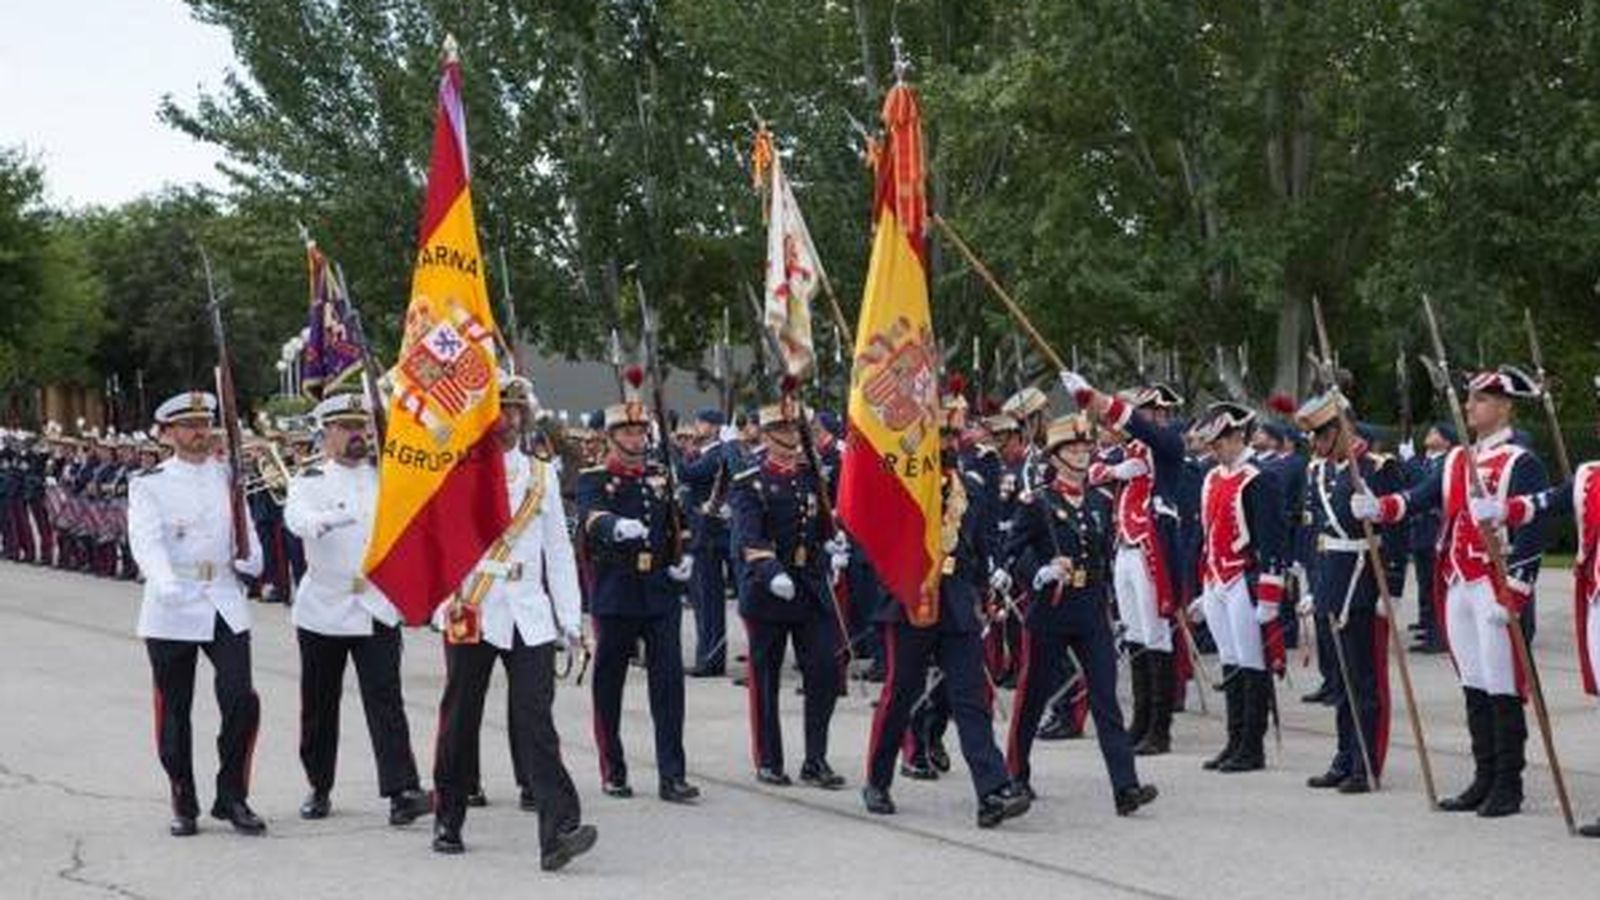 Foto: Acto solemne de jura de bandera de la nobleza en El Pardo. (Diputación de la Grandeza)